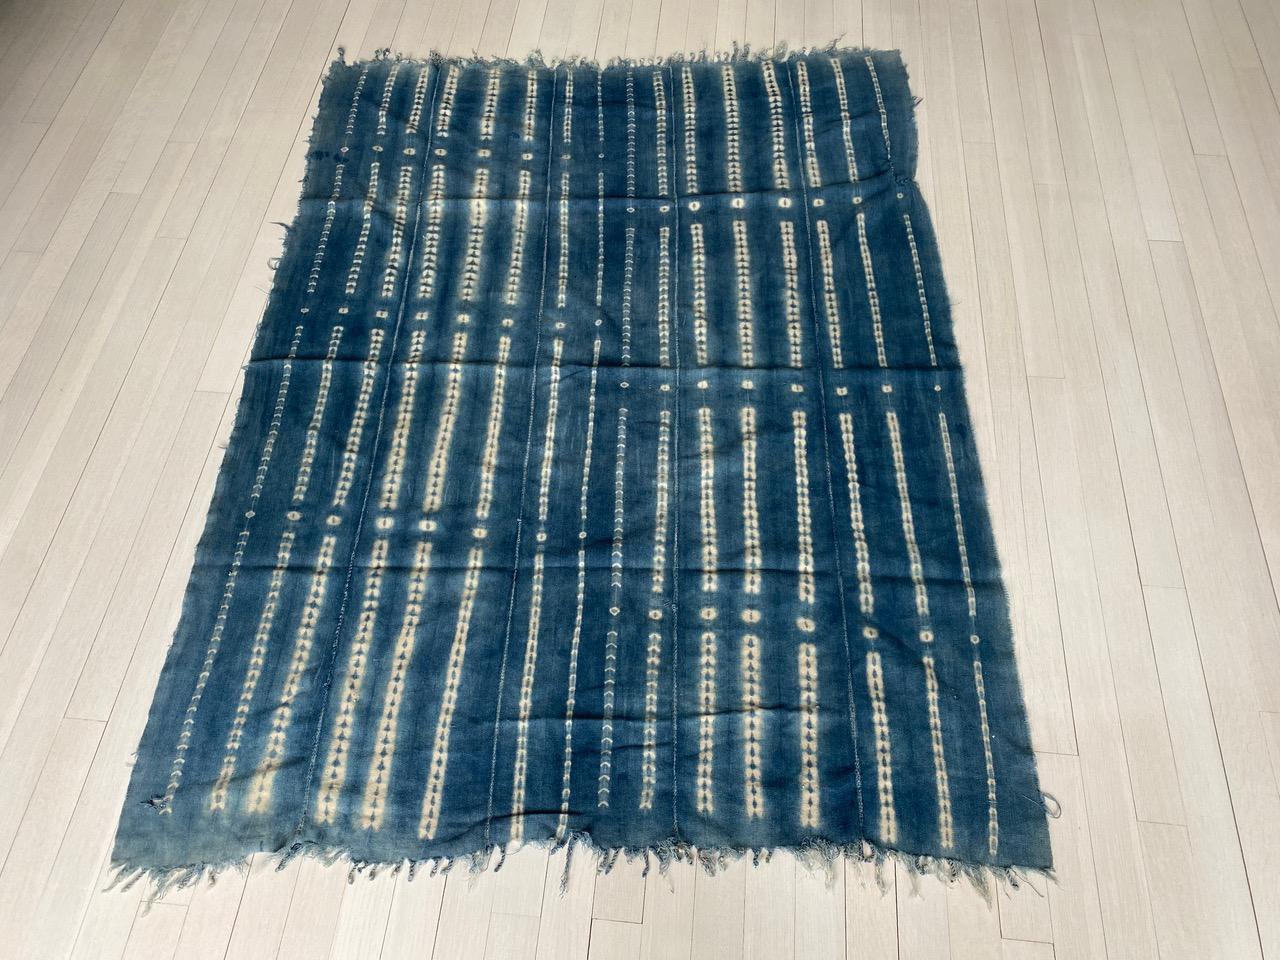 Afrikanisches indigoblaues Mali-Textil, um 1950. Handgewebte, pflanzlich gefärbte Baumwolle. Wir wählten nur das Beste aus.

Dieses weiche Textil wurde im Geiste von Wabi-Sabi beschafft, einer japanischen Philosophie, die besagt, dass Schönheit in